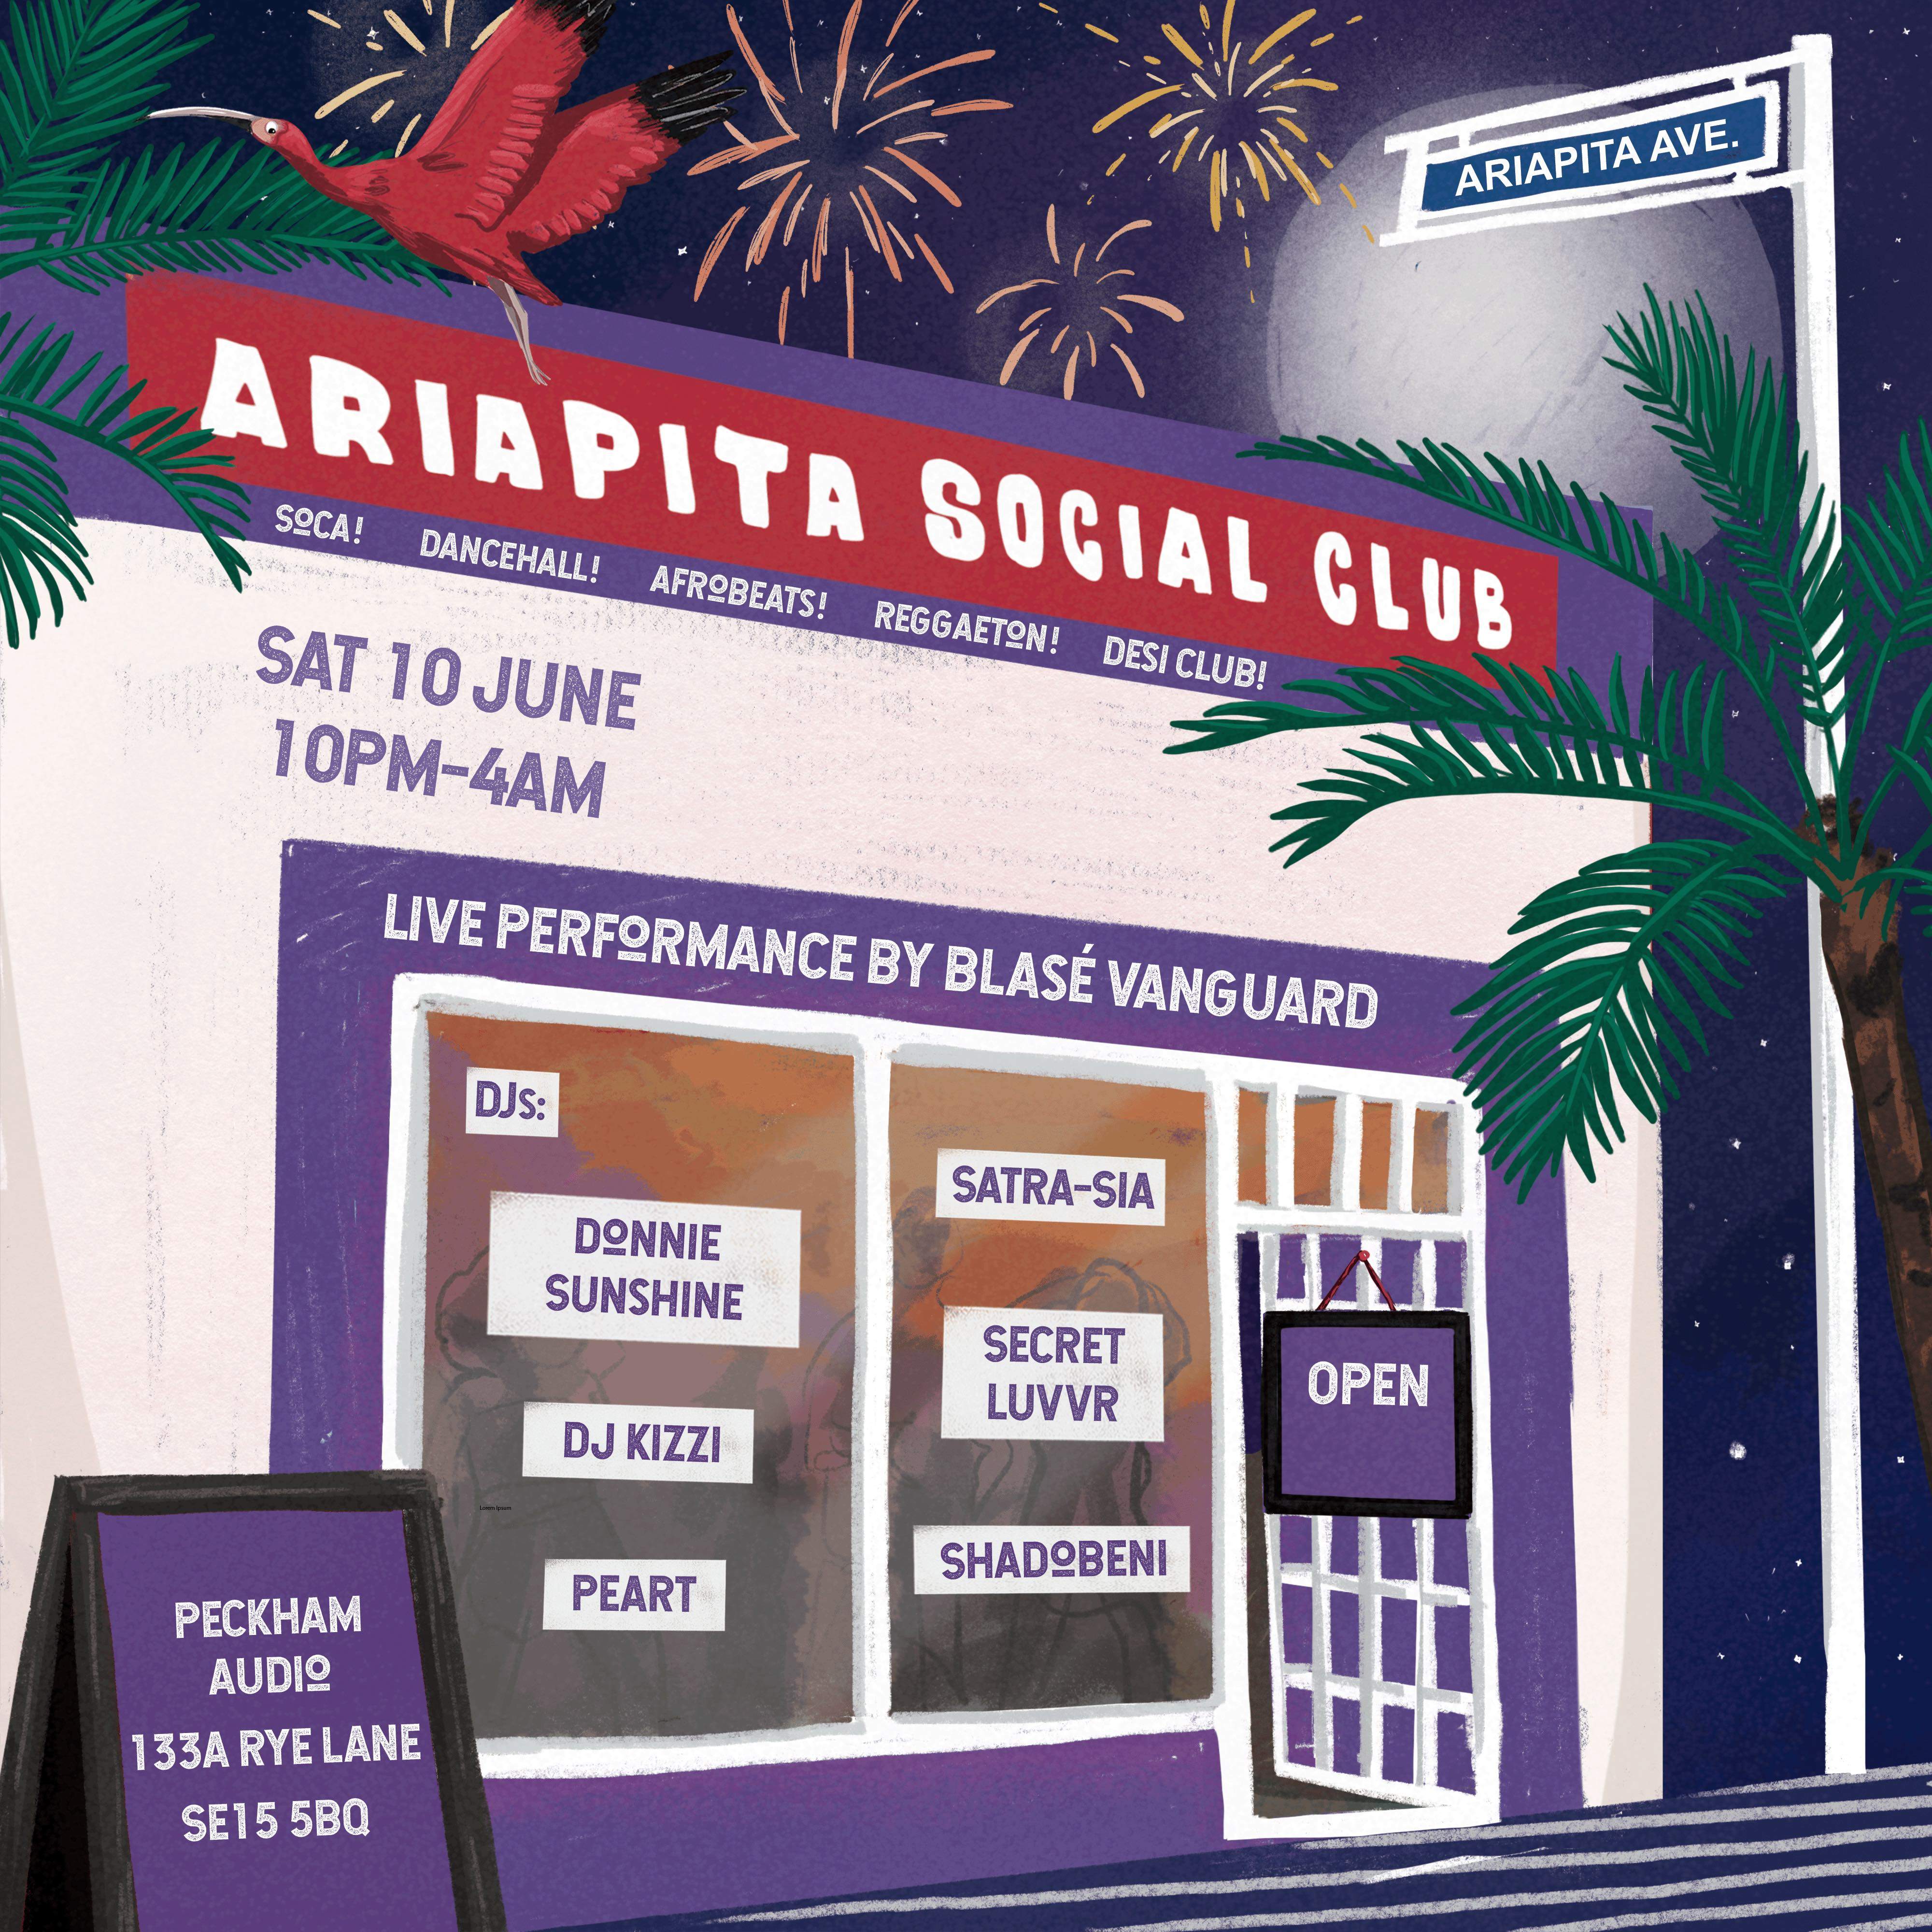 Ariapita Social Club goes South - フライヤー表